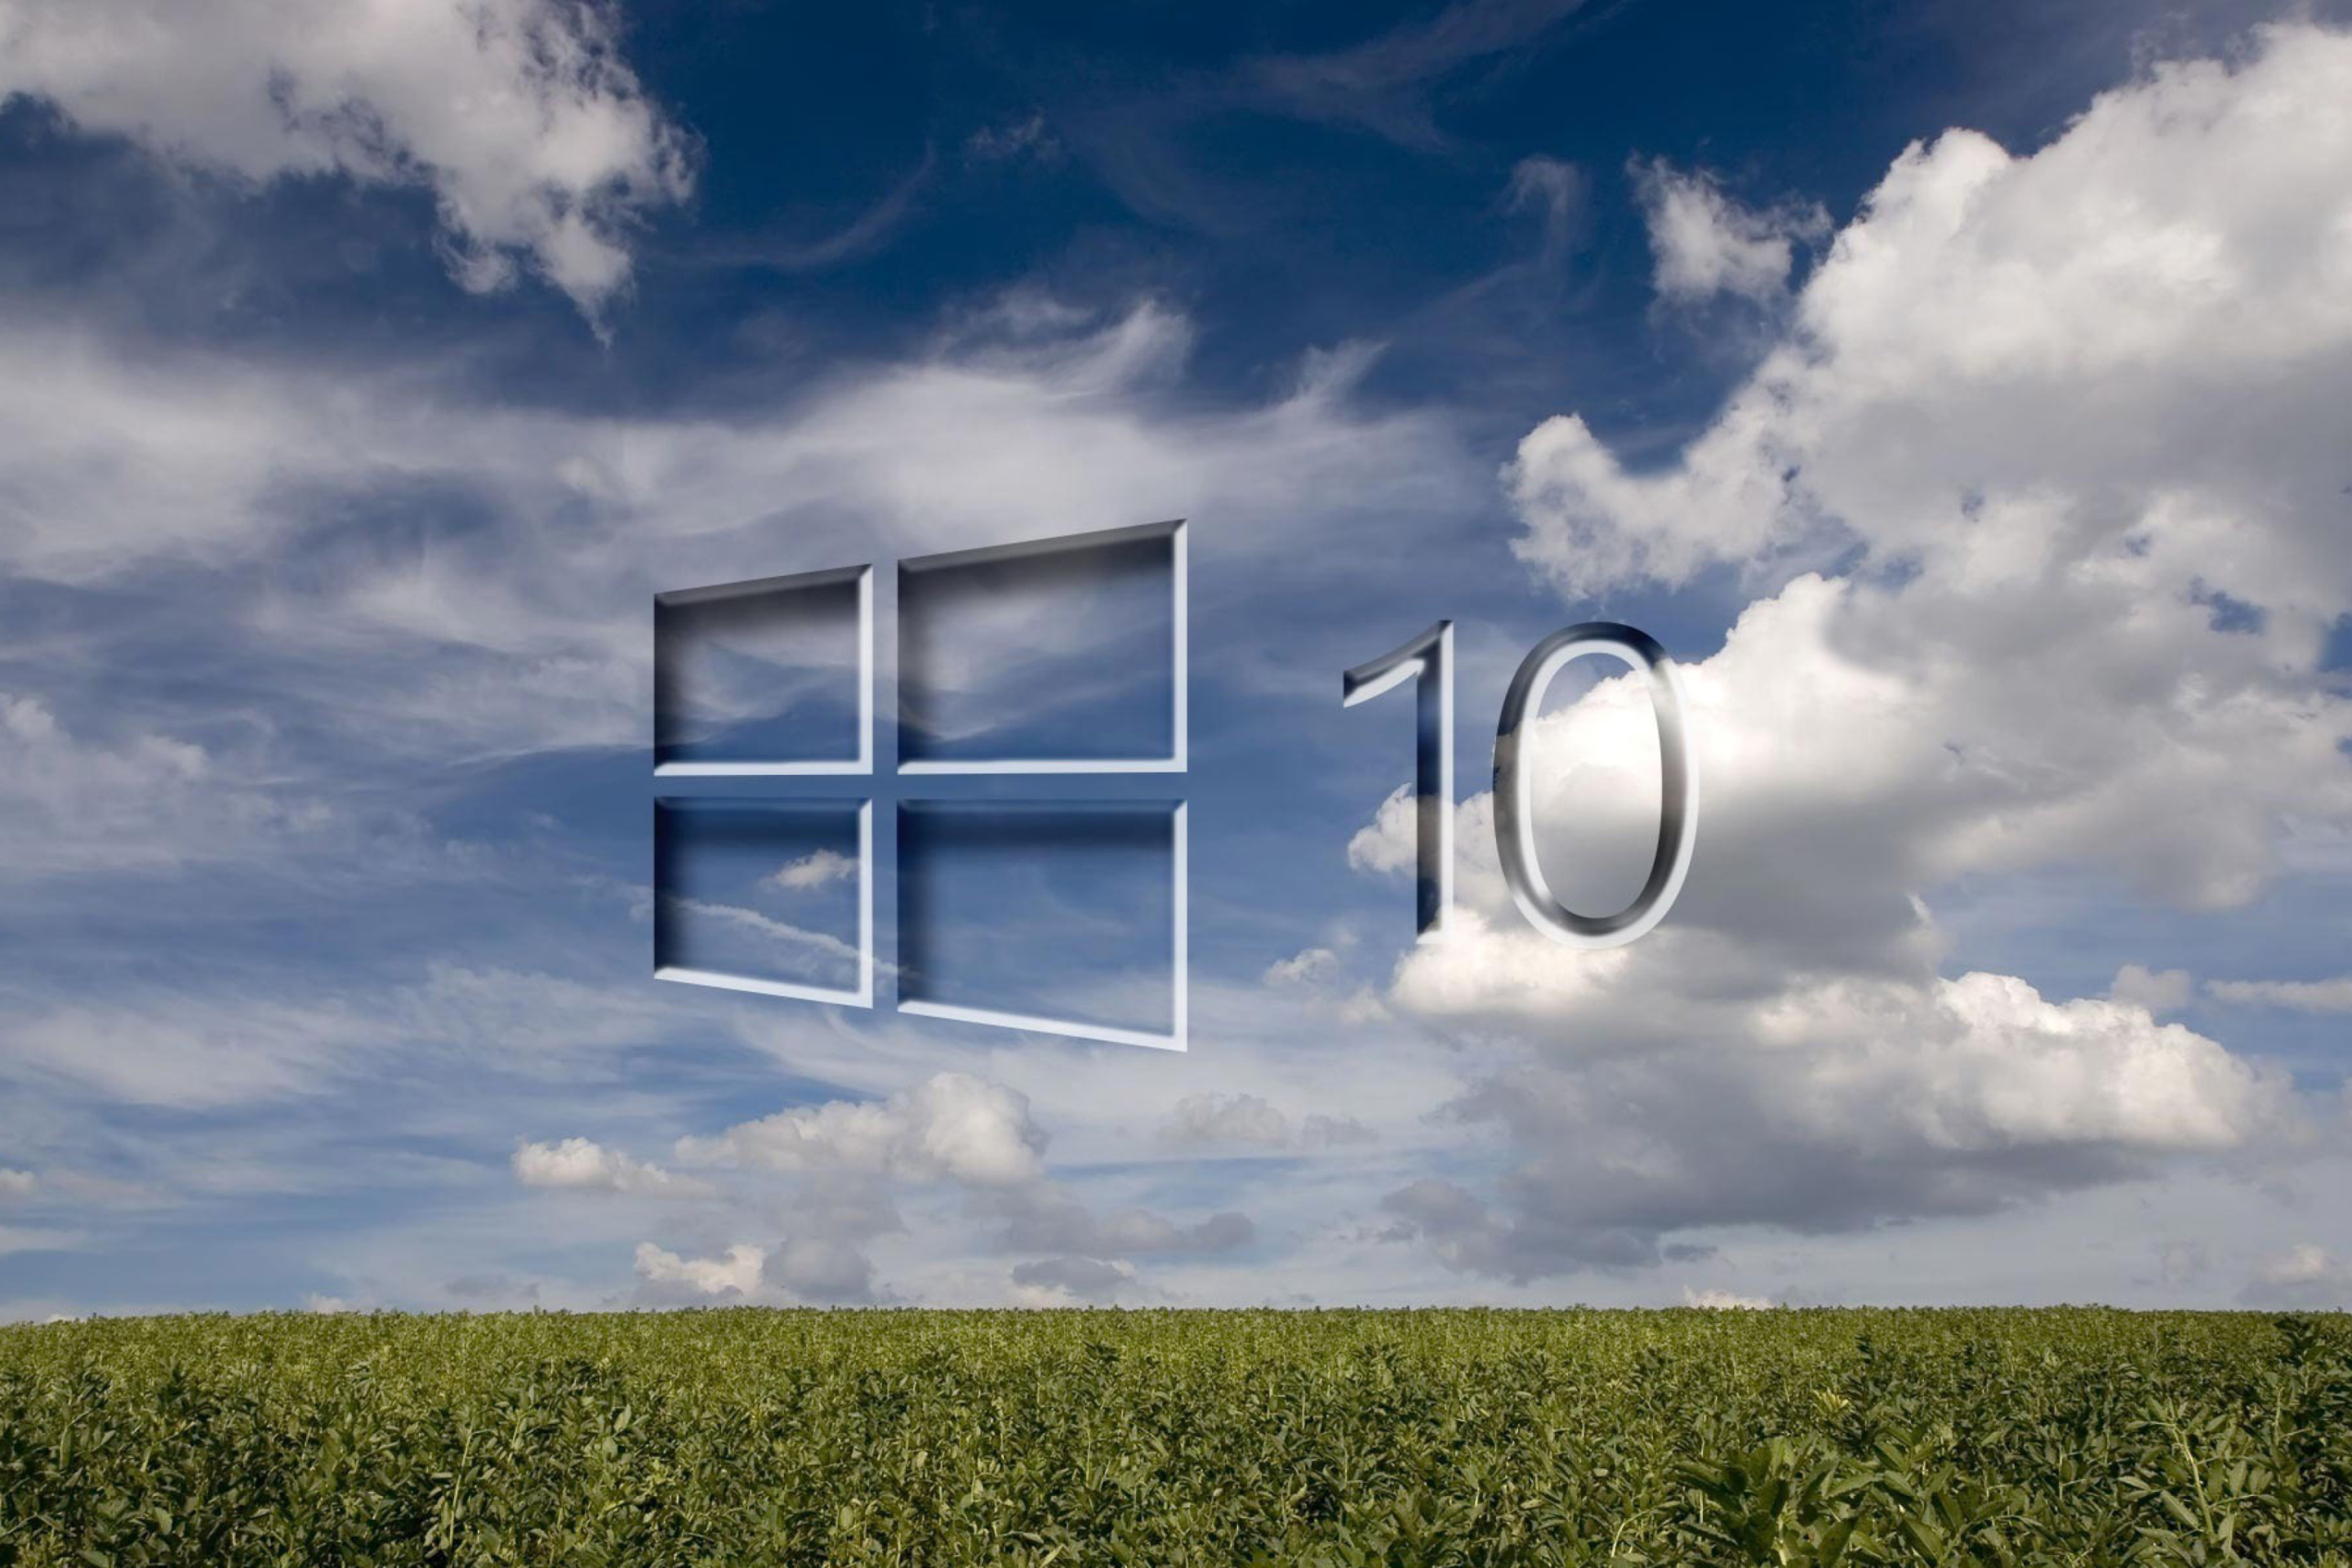 Sfondi Windows 10 Grass Field 2880x1920